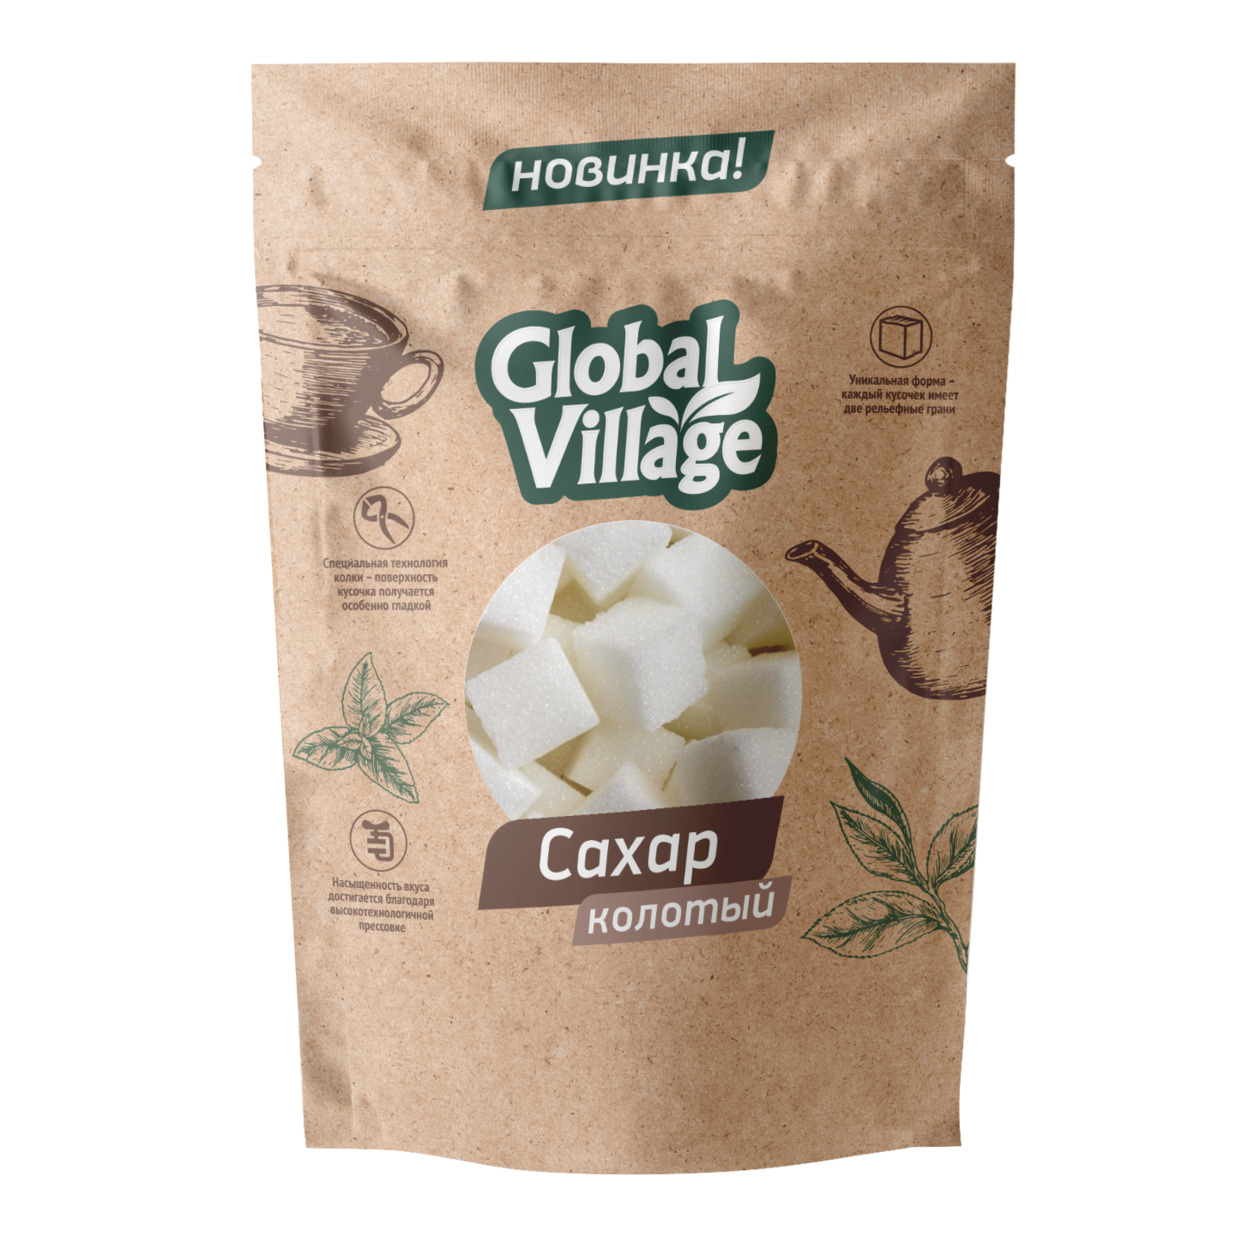 Global Village сахар кусковой прессованный колотый 420г по акции в Пятерочке